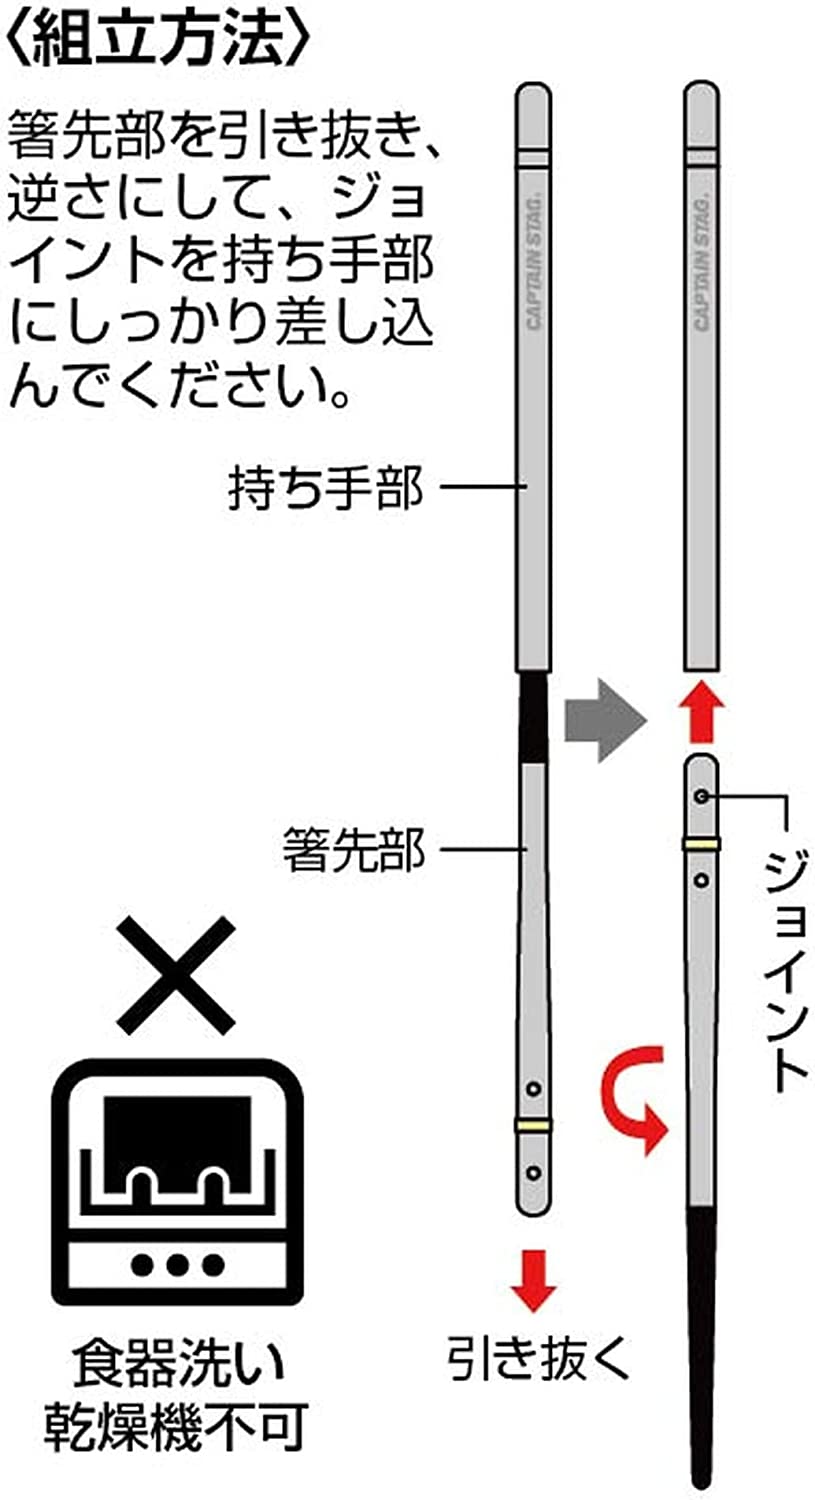 キャプテンスタッグSHIKA-BASHI ジョイント式携帯箸